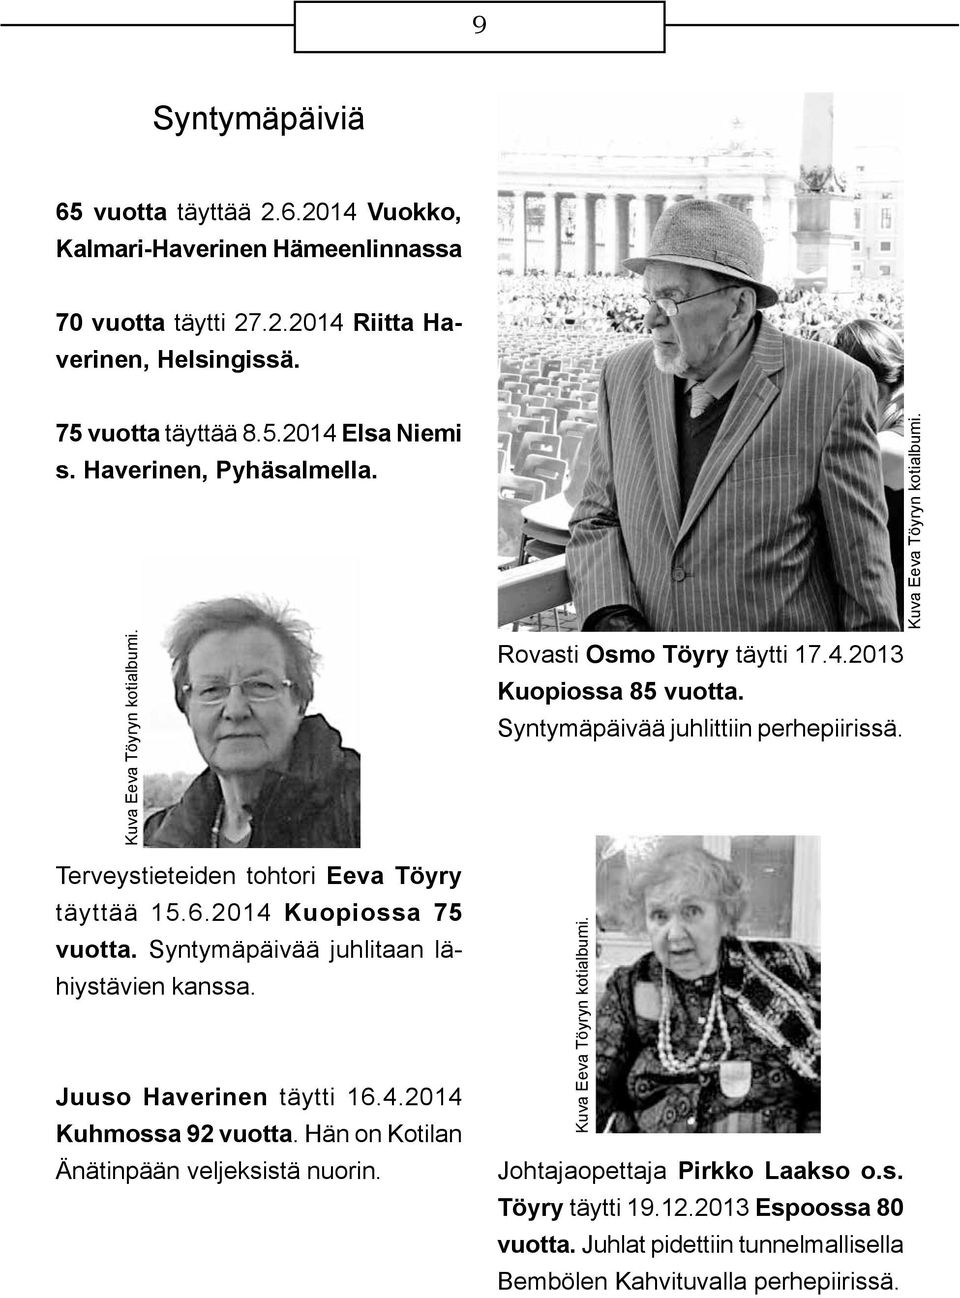 Juuso Haverinen täytti 16.4.2014 Kuhmossa 92 vuotta. Hän on Kotilan Änätinpään veljeksistä nuorin. Rovasti Osmo Töyry täytti 17.4.2013 Kuopiossa 85 vuotta.